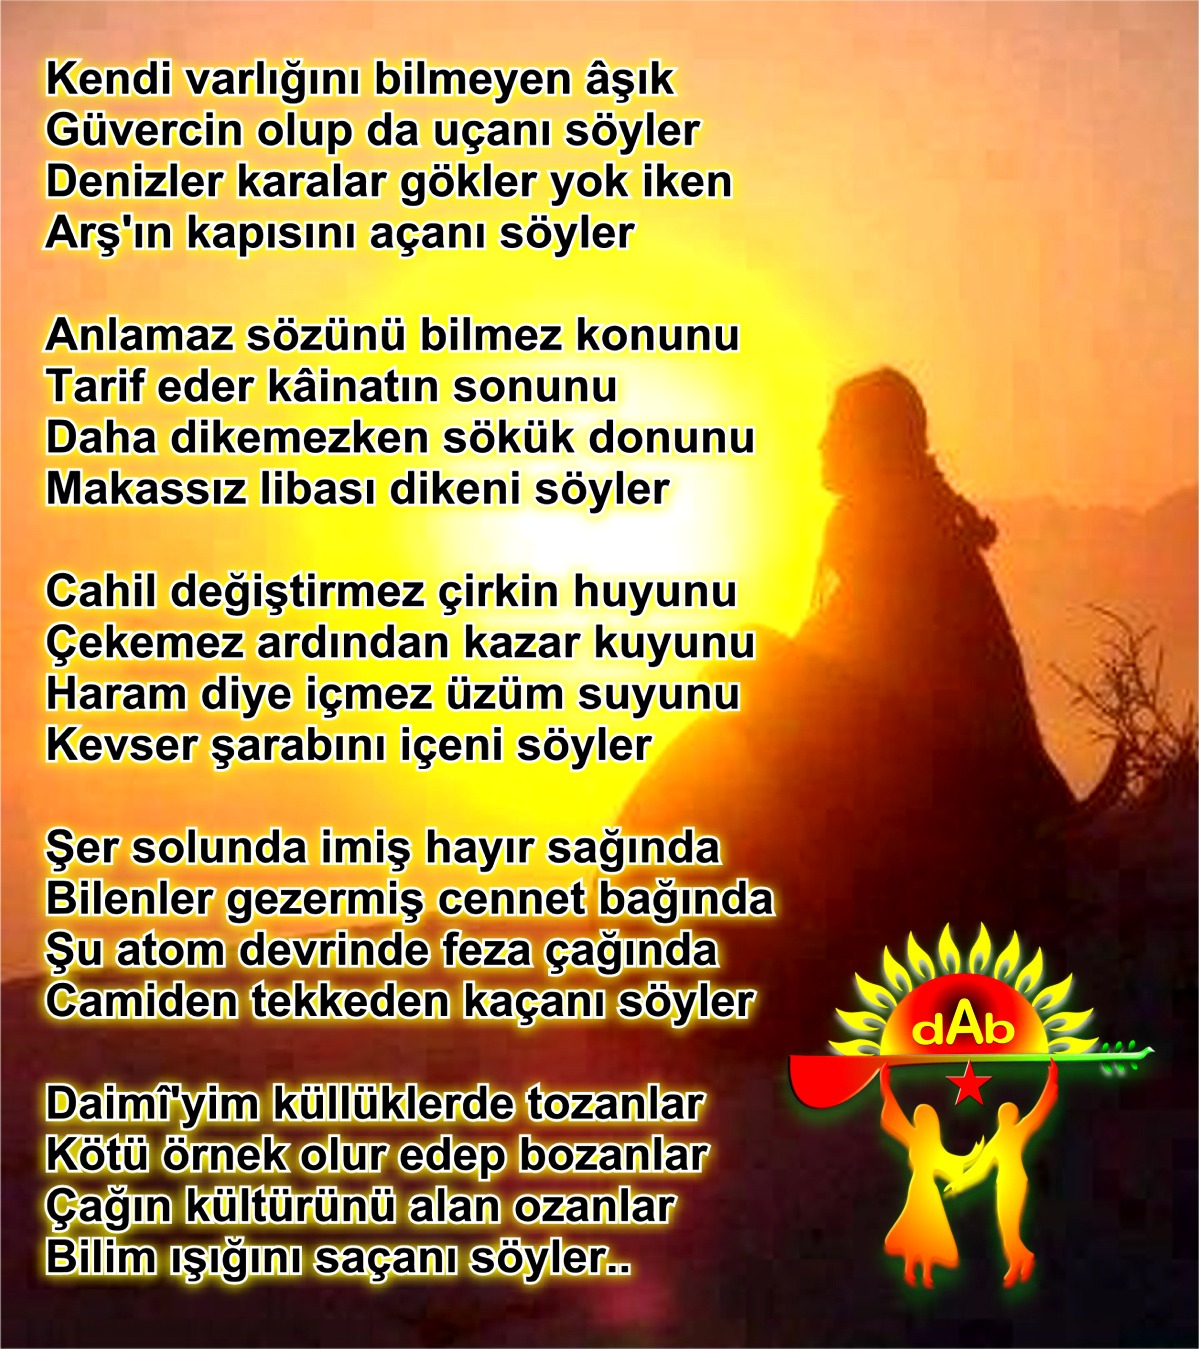 Alevi Bektaşi Kızılbaş Pir Sultan Devrimci Aleviler Birliği DAB söyler daiimi